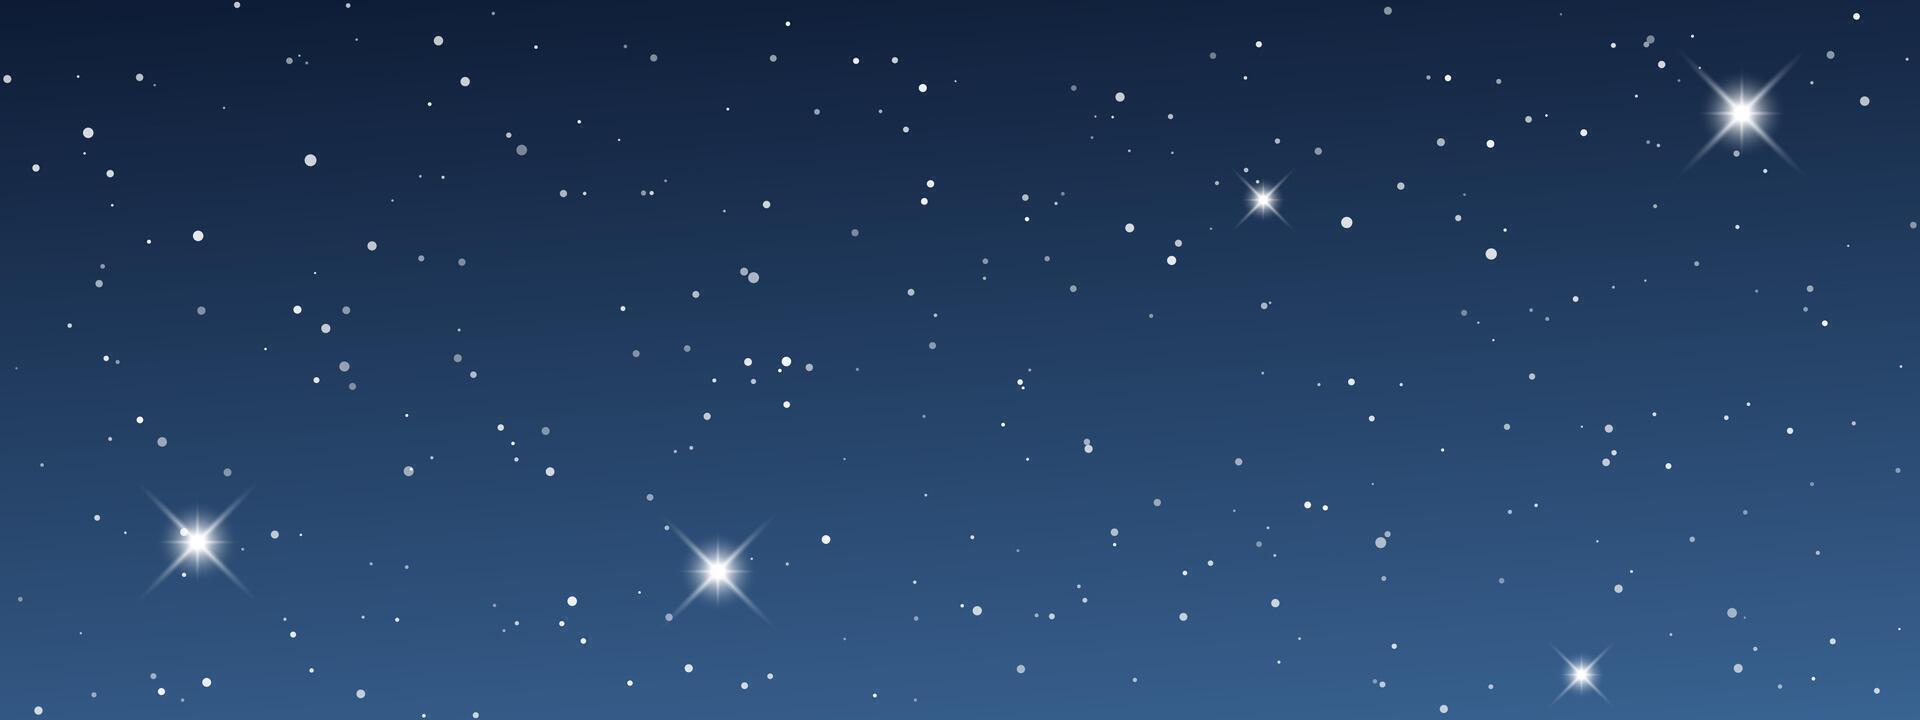 Nacht Himmel mit viele Sterne vektor